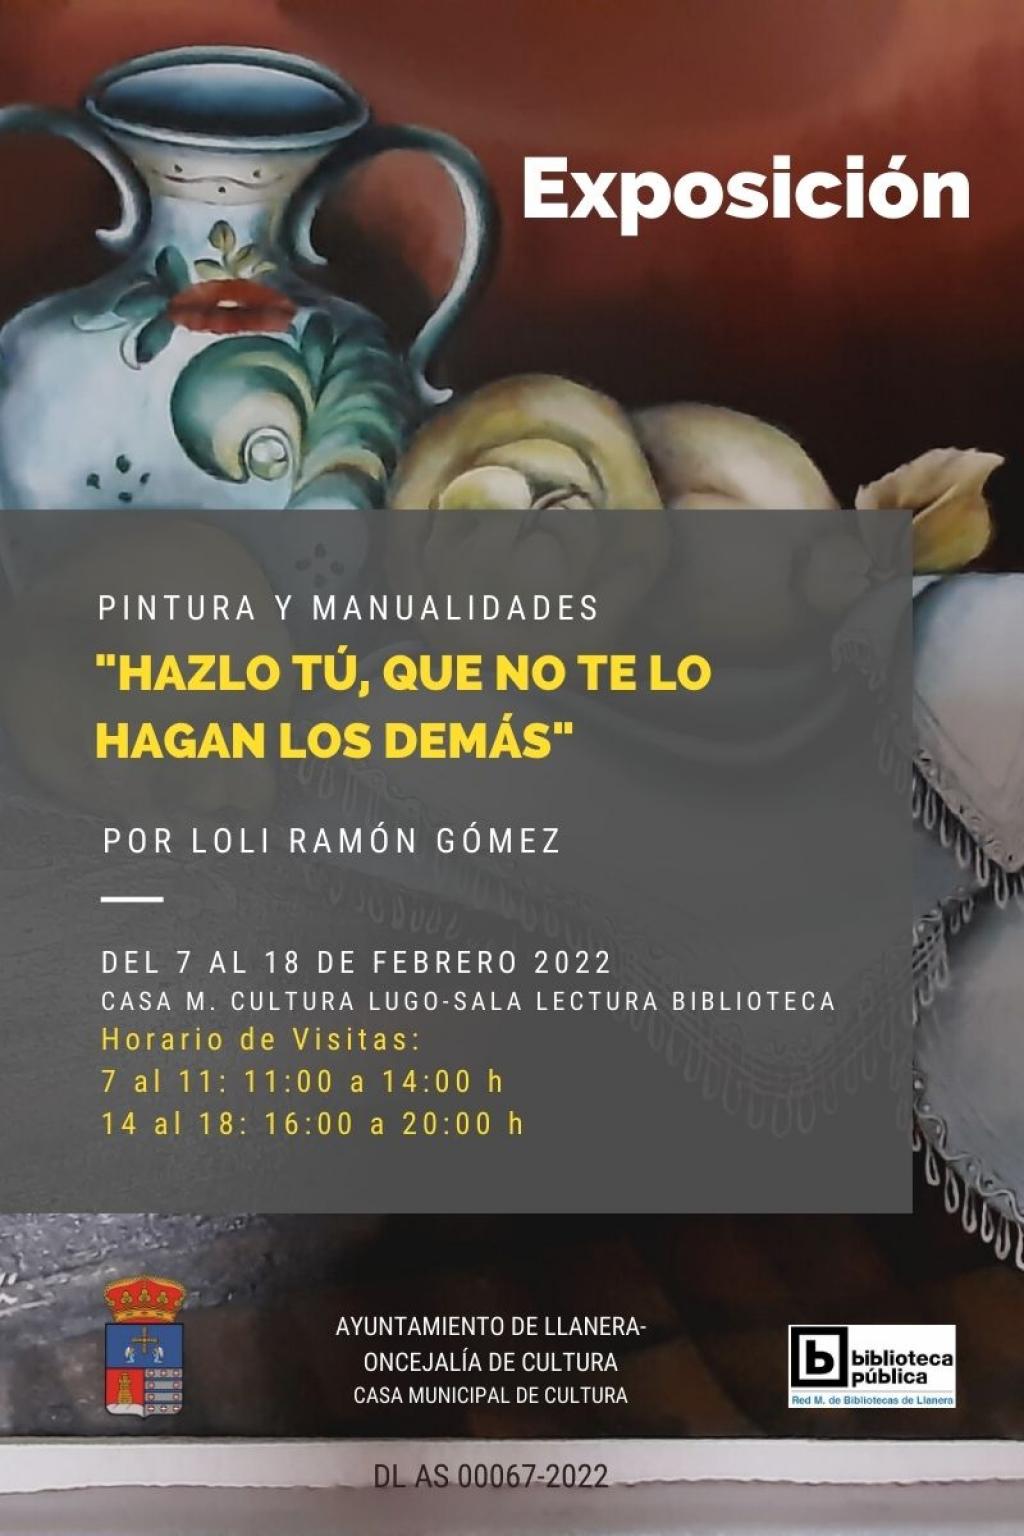 El Tapin - La exposición de pintura y manualidades "Hazlo tú, que no te lo hagan los demás" se podrá visitar del 7 al 18 de ferero en la Casa de Cultura de Lugo